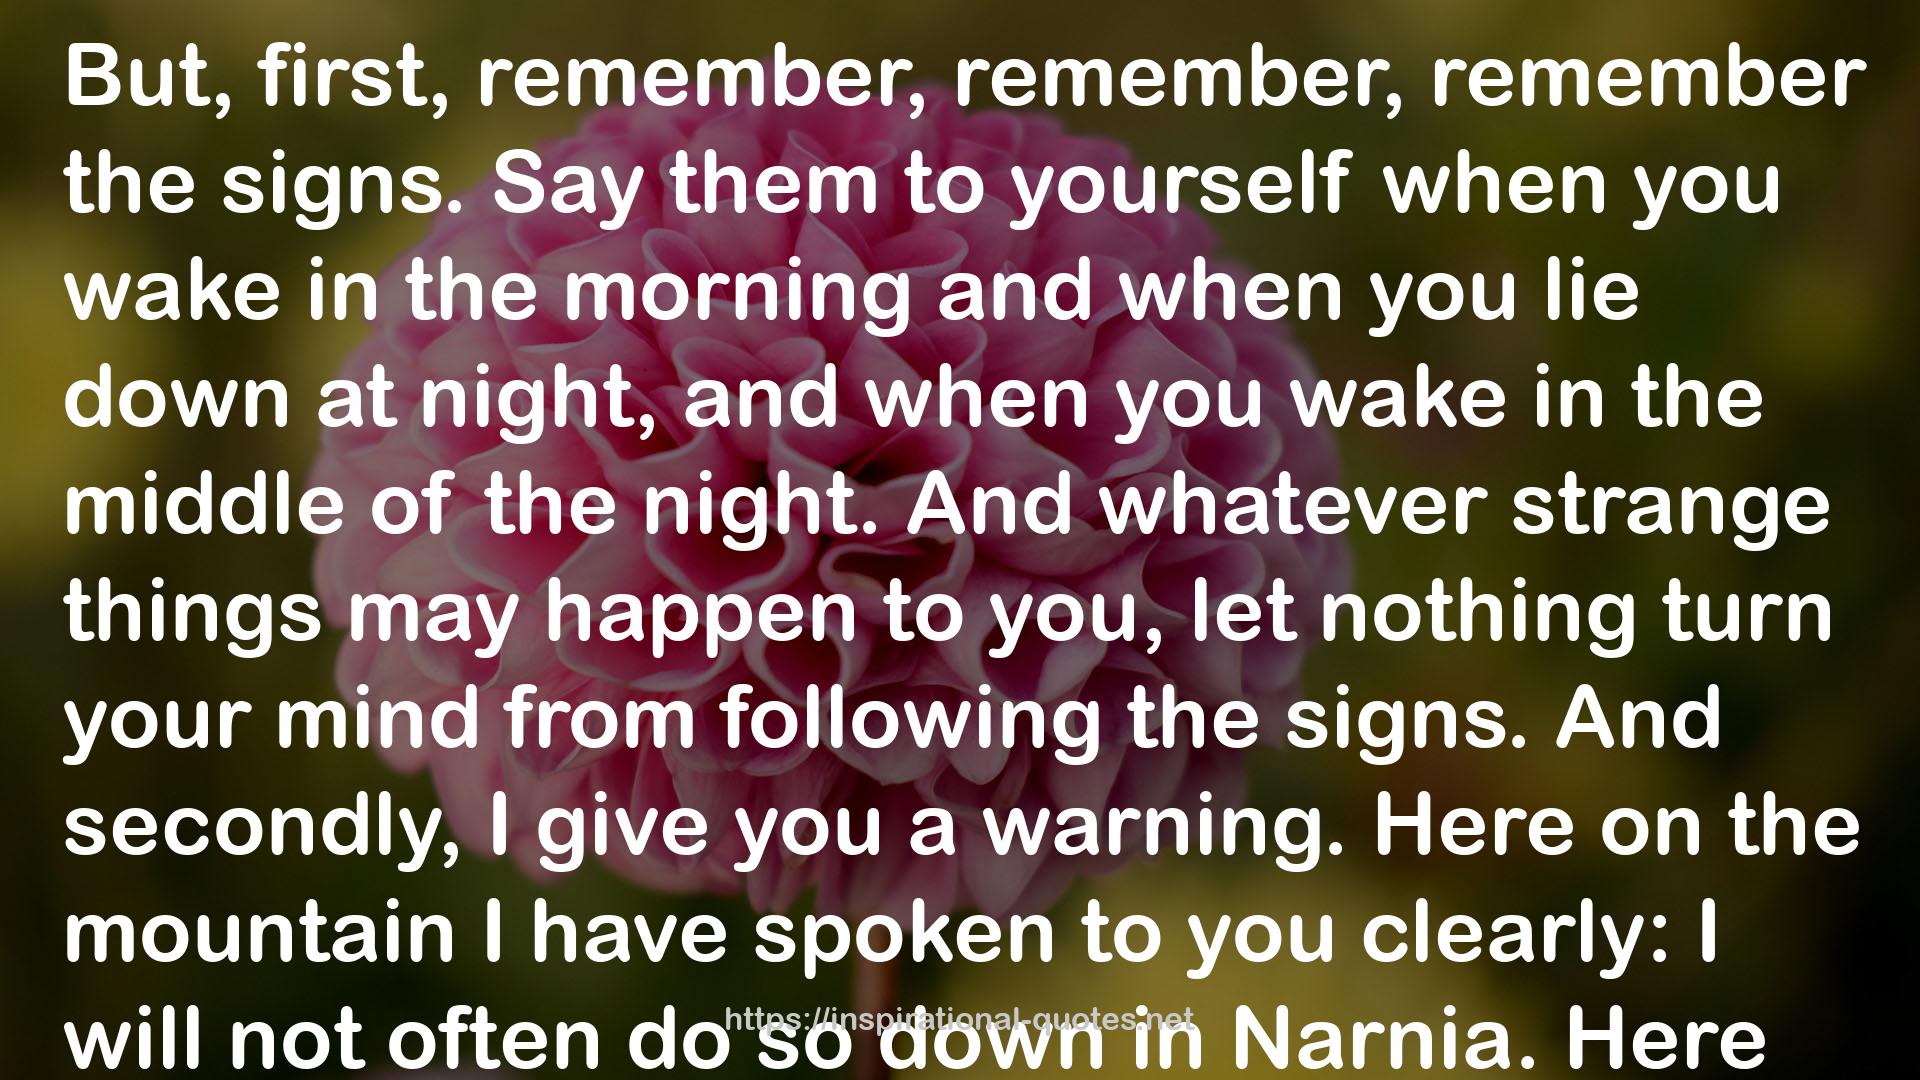 The Chronicles of Narnia (Chronicles of Narnia, #1-7) QUOTES